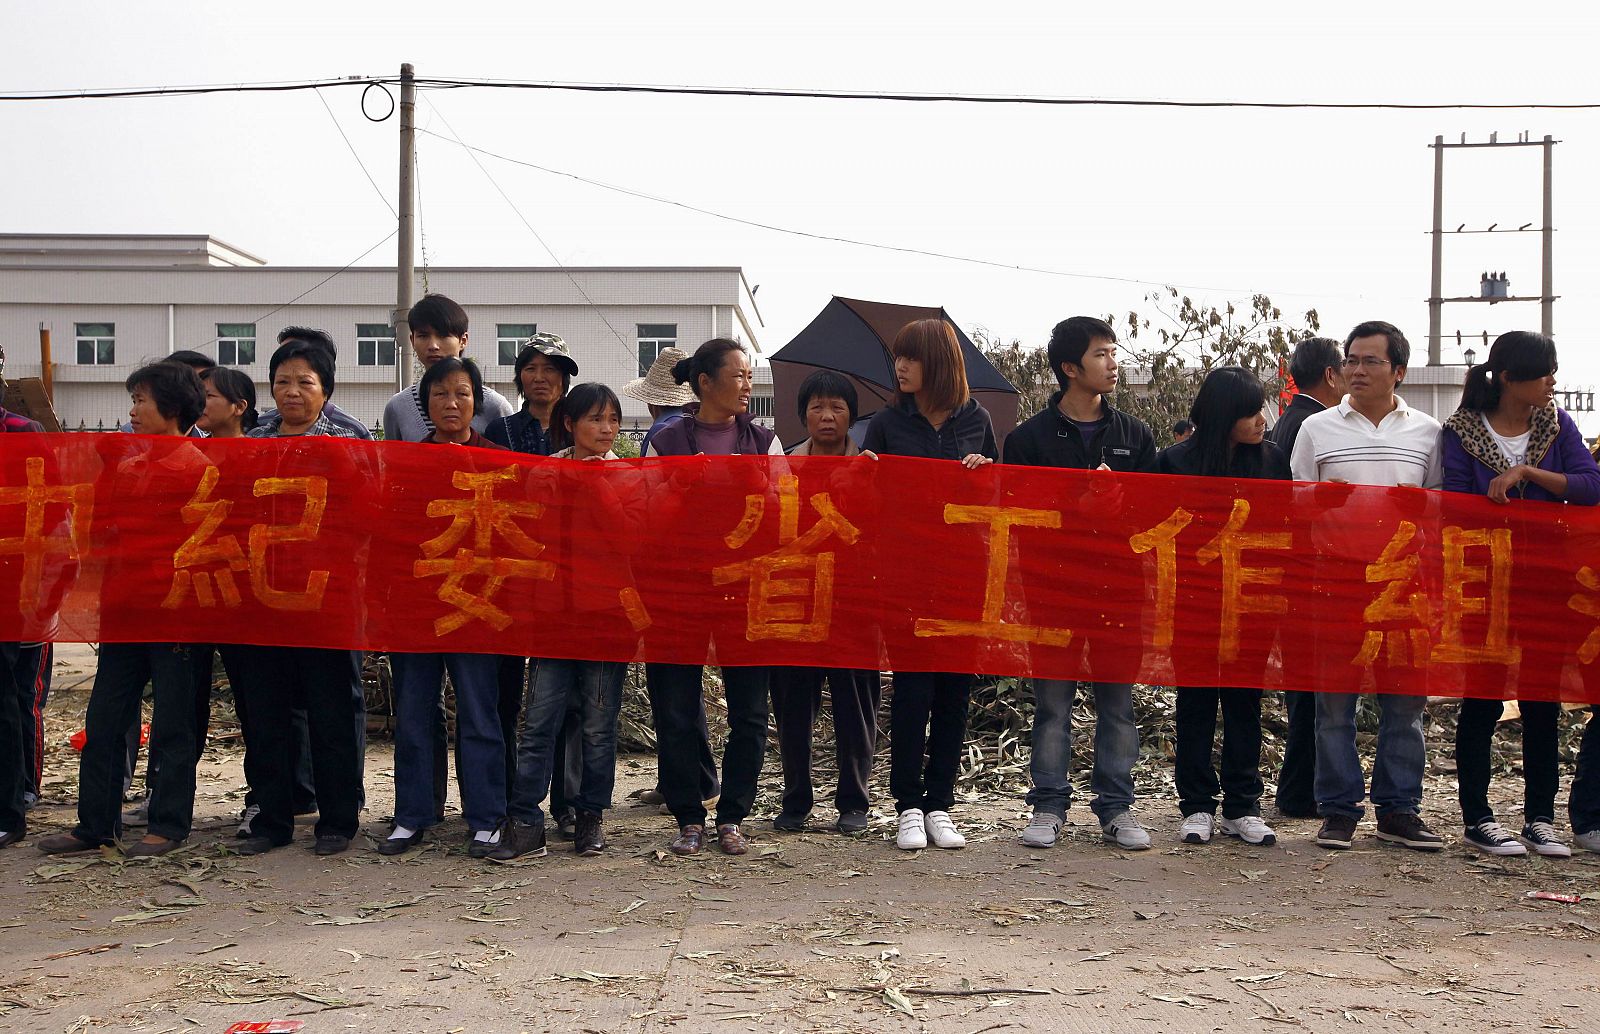 Vecinos de Wukan (China) con una pancarta esperan a los representantes del gobierno regional que negocian una solución al conflicto